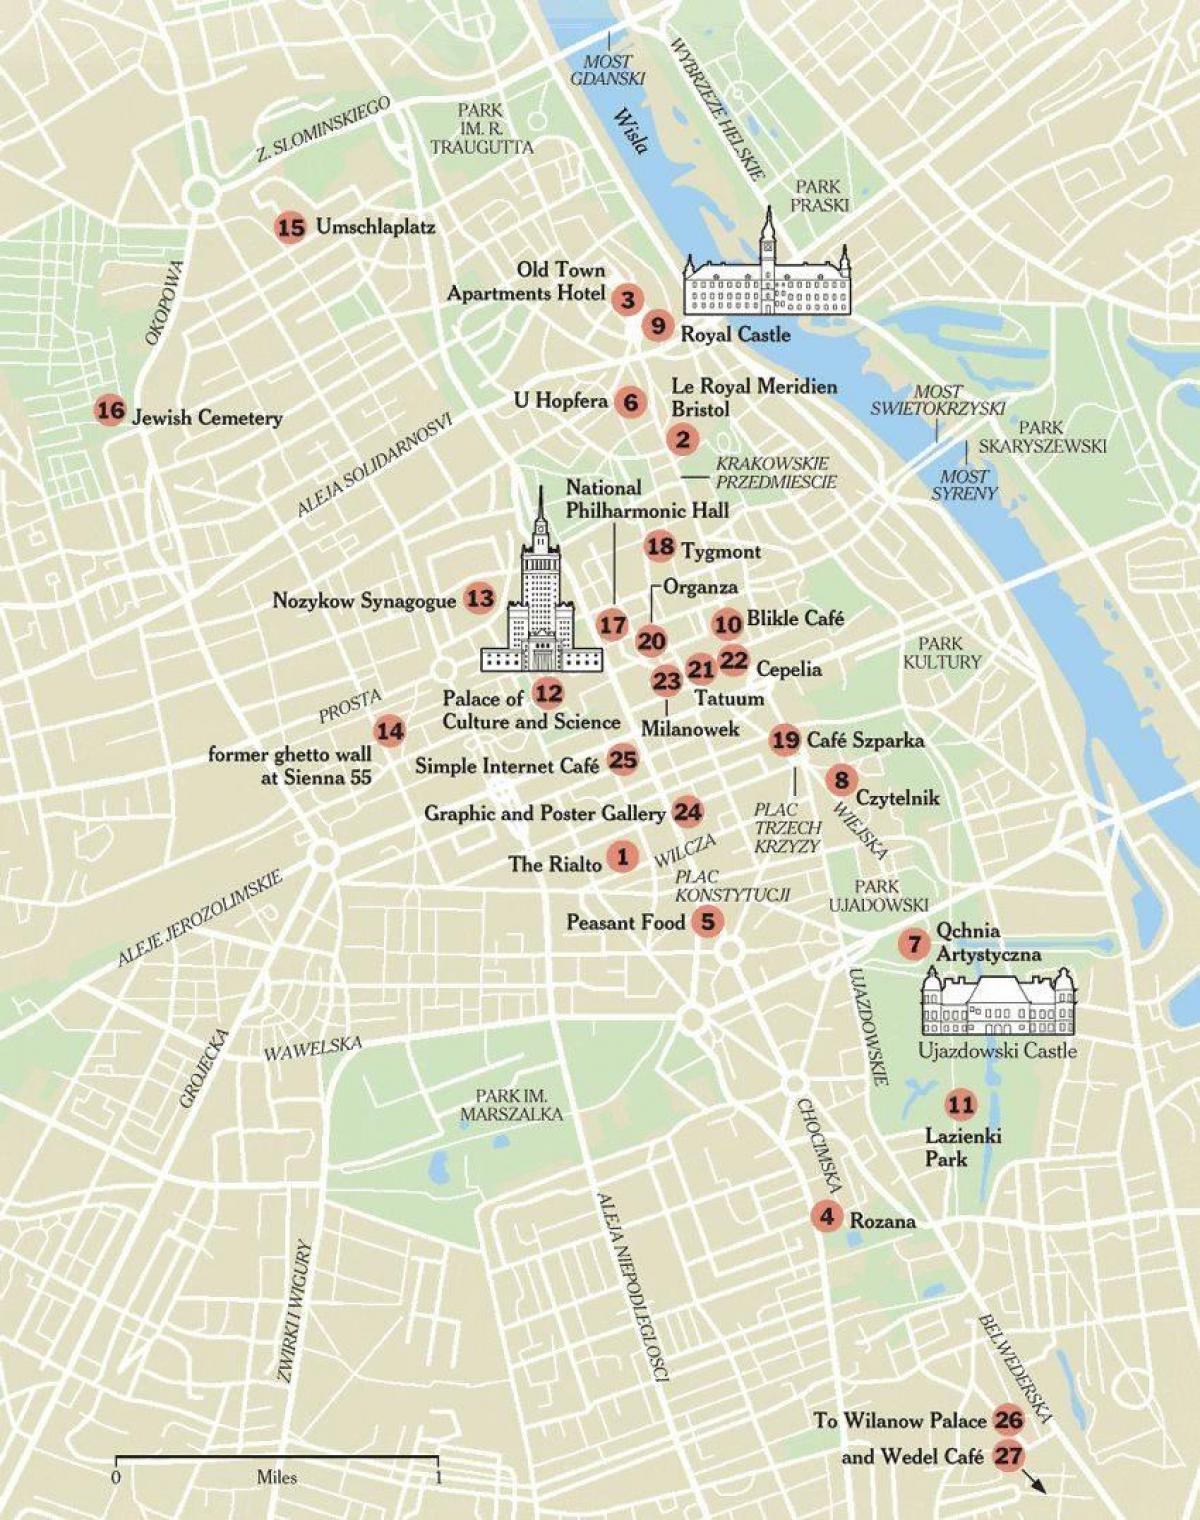 Mapa de Varsovia walking tour 